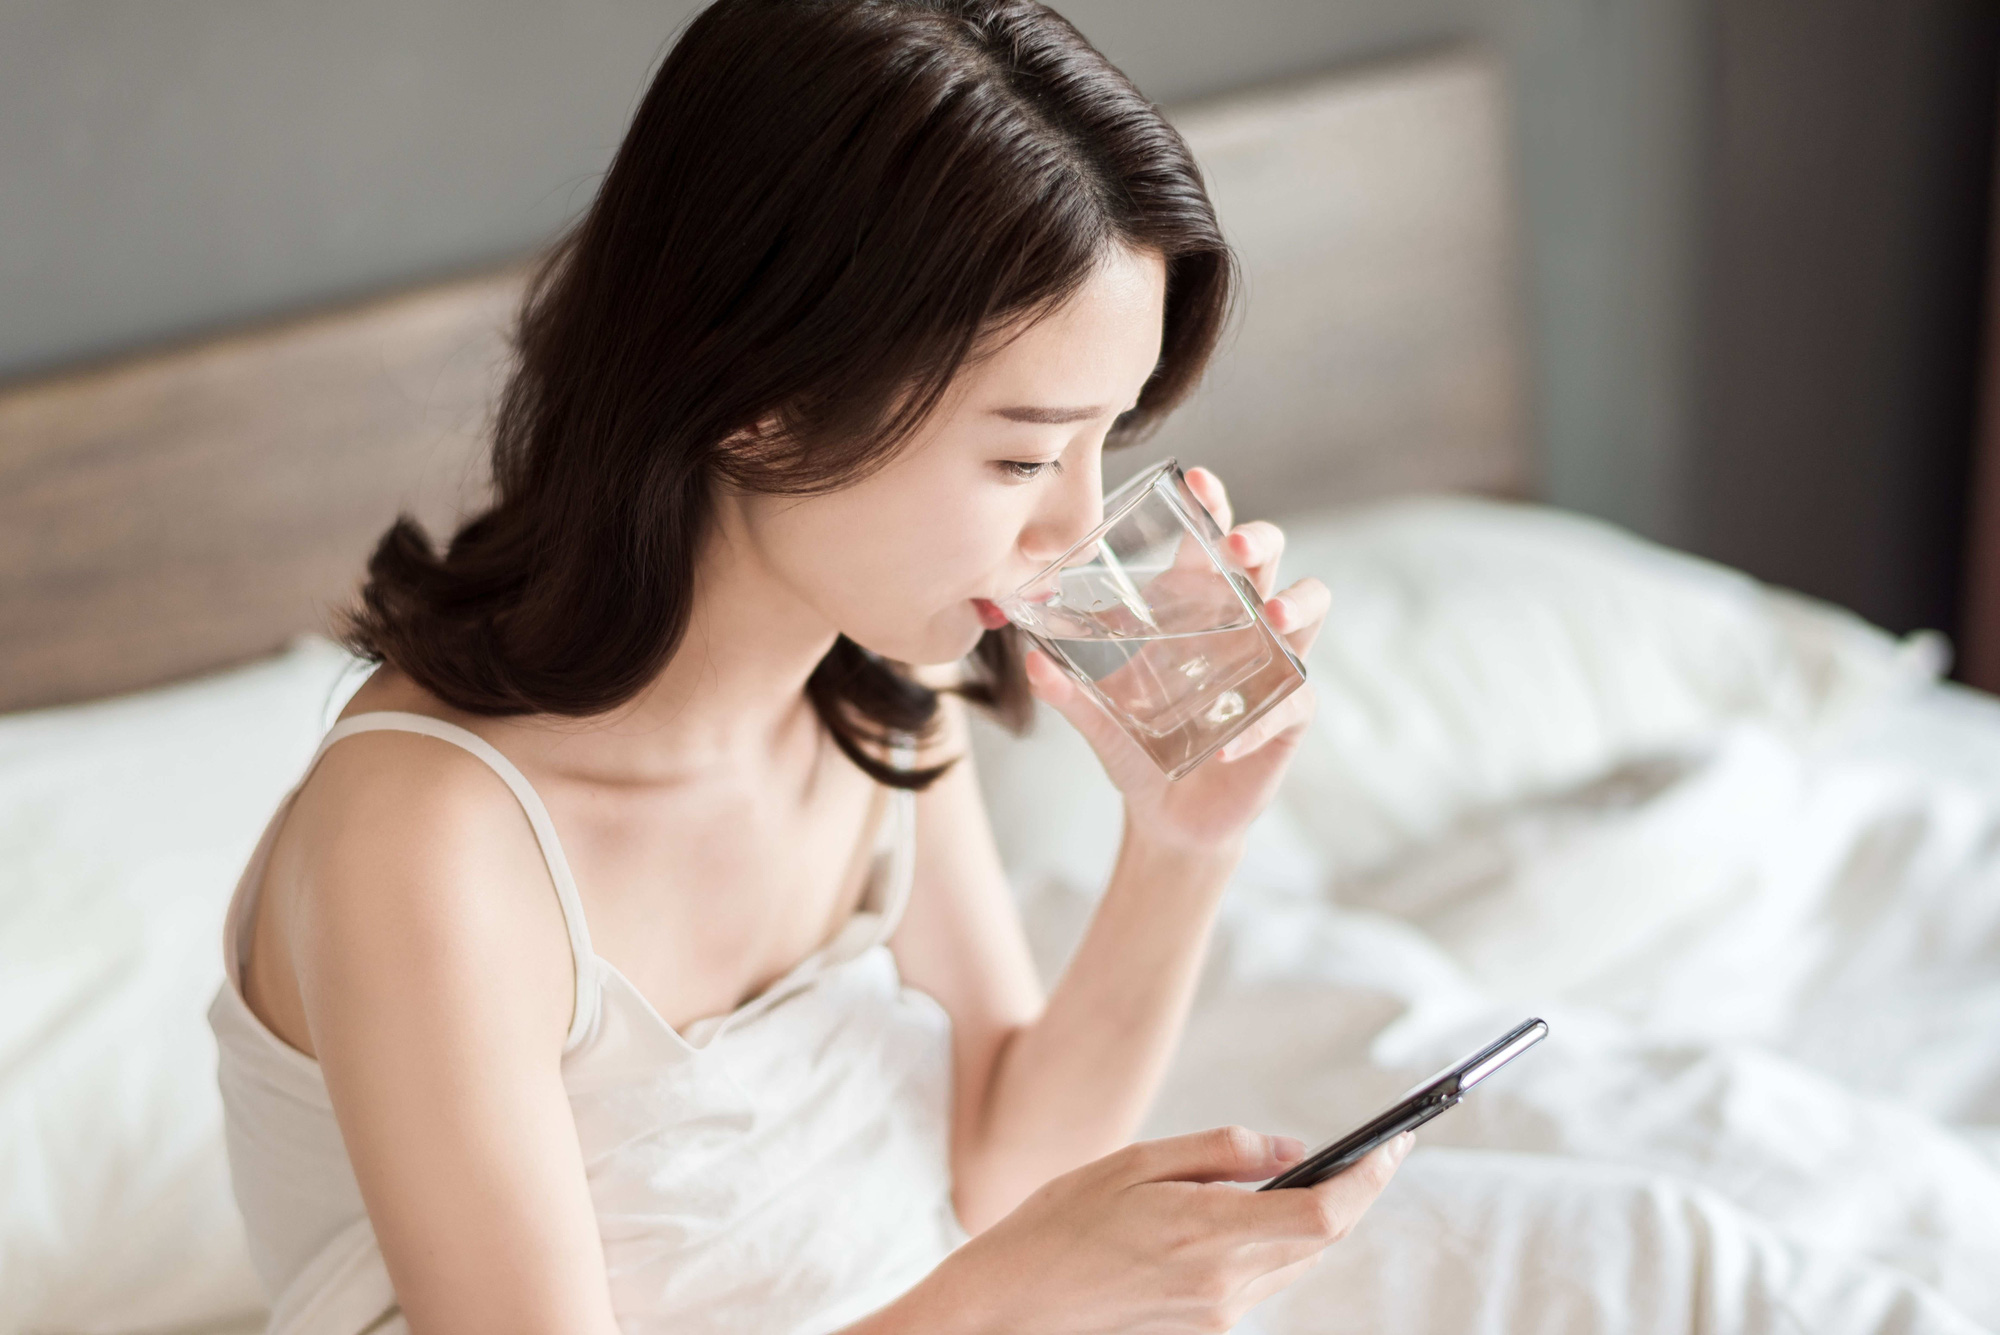 Uống nước vào 3 thời điểm này làm hại thận và hại tim, khuyến cáo 2 thời điểm không khát cũng nên uống để 